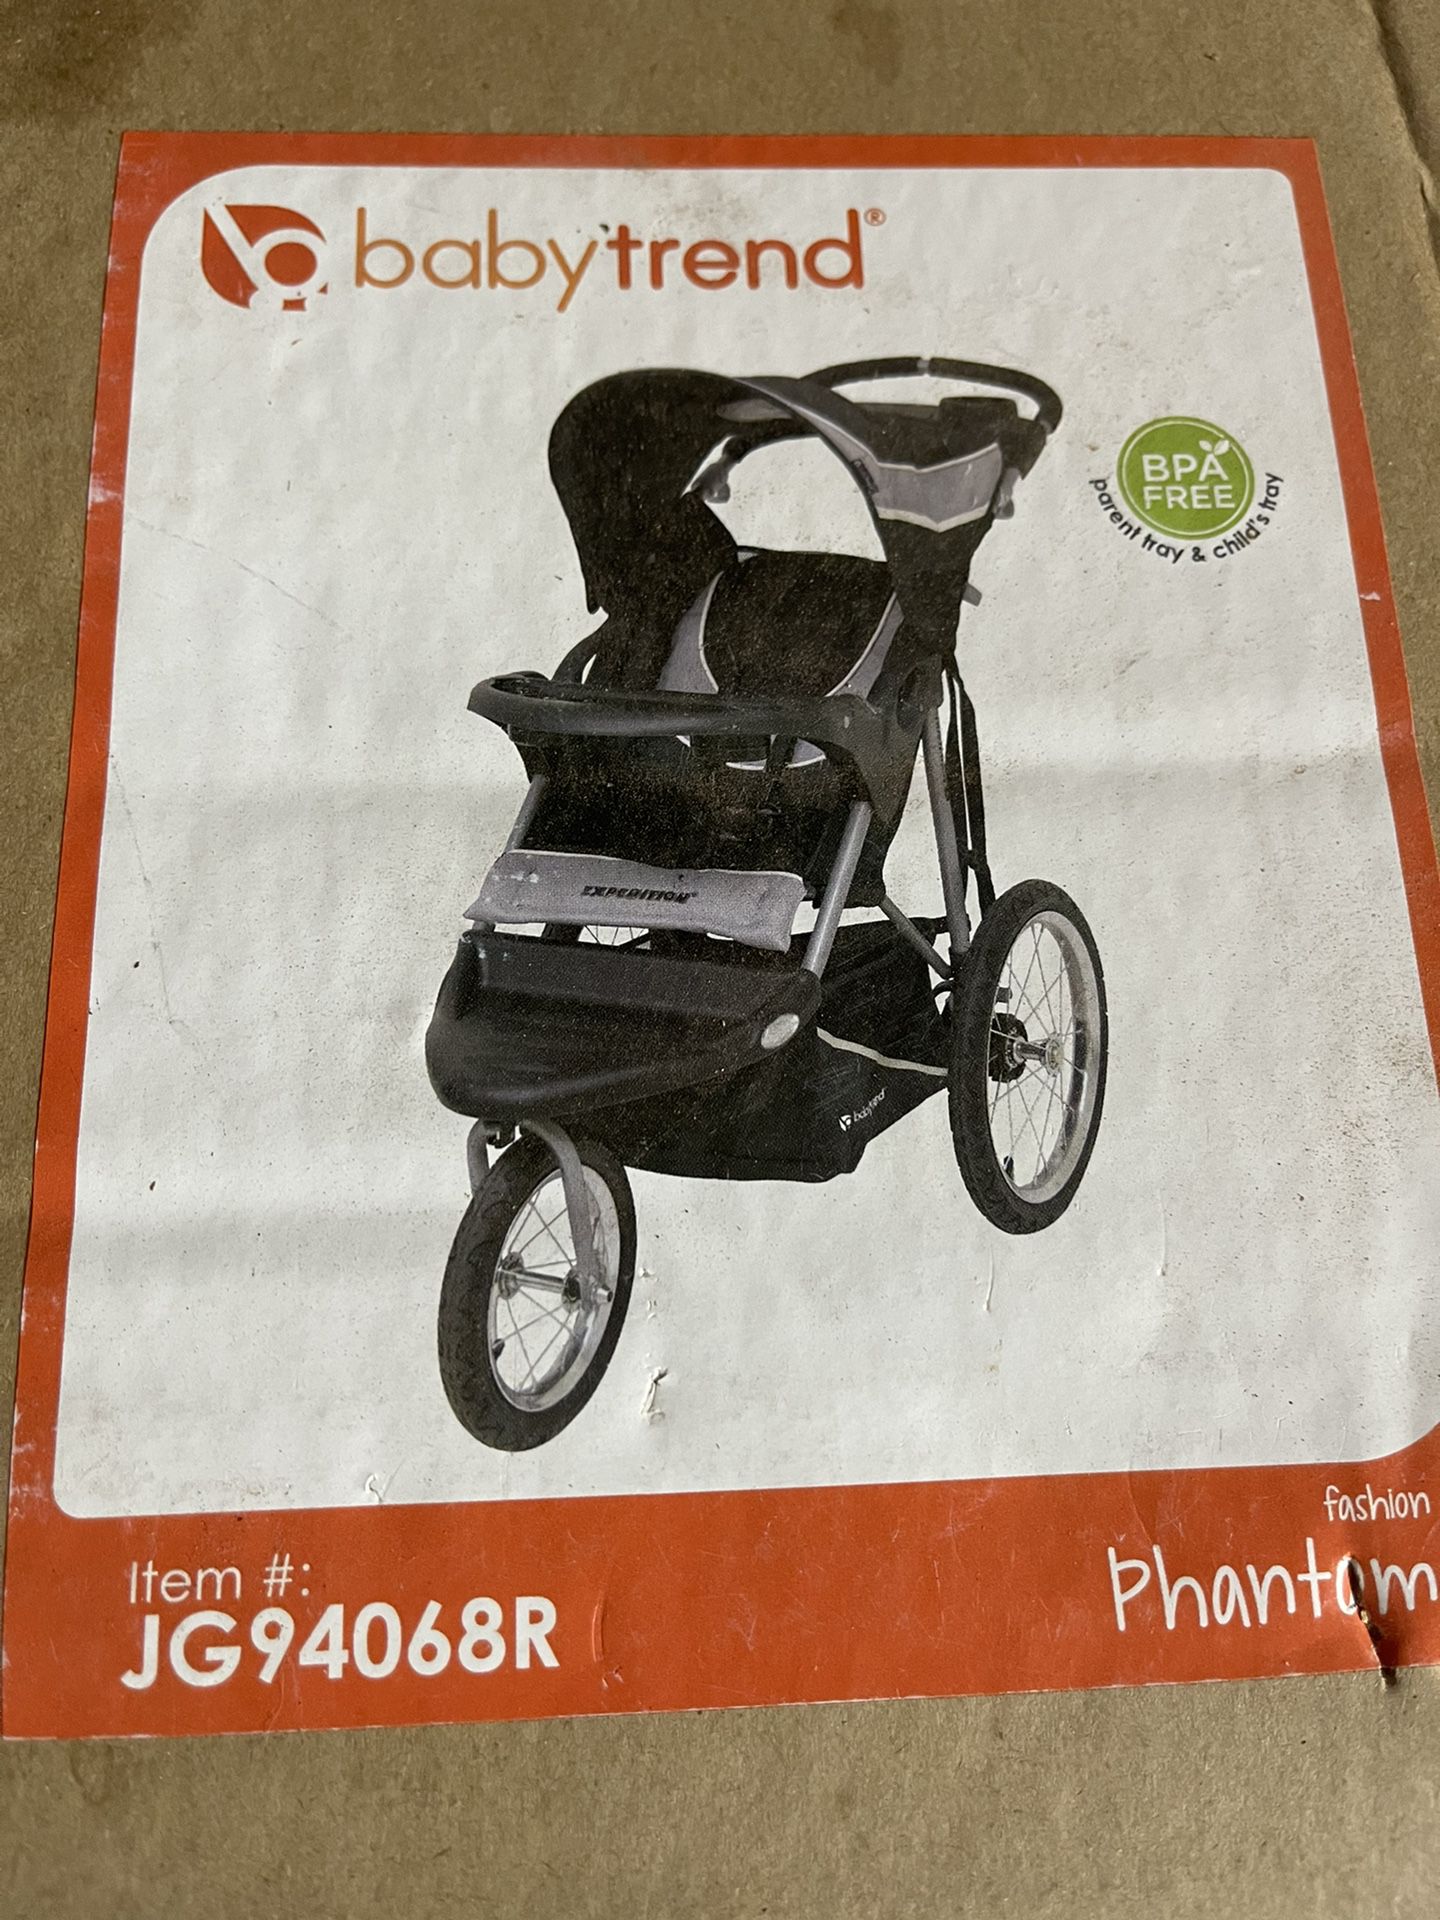 Babytrend,Jogger Phantom Brand New.